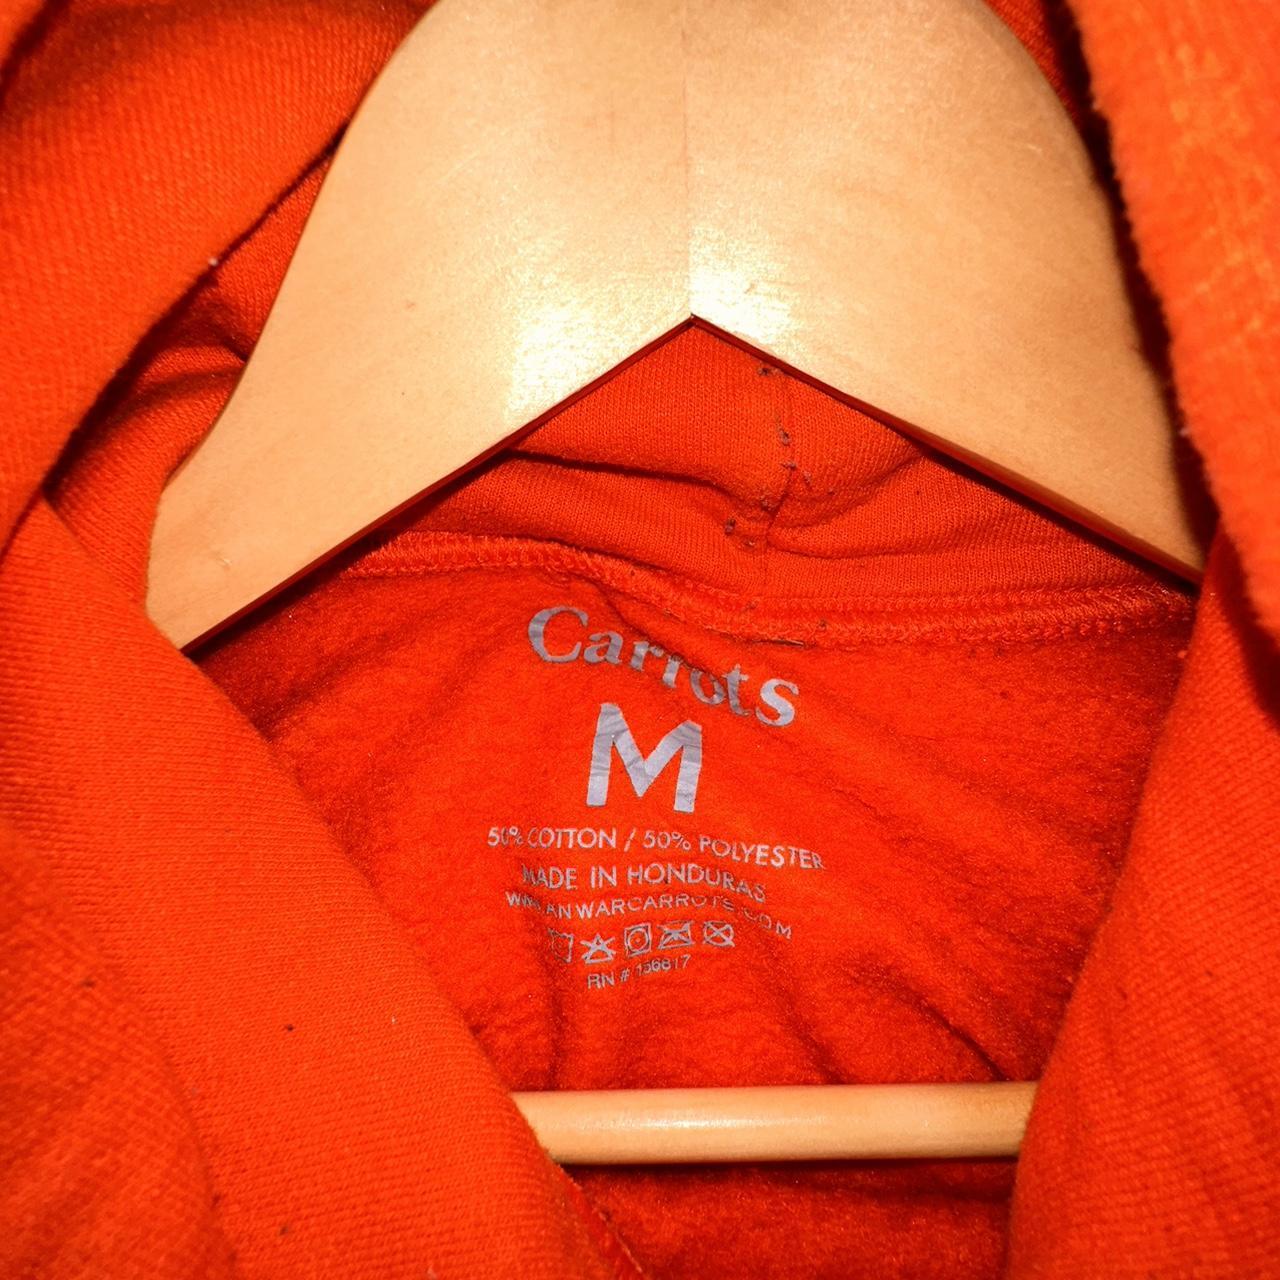 Anwar Carrots “Circulate” orange hoodie, nice piece...